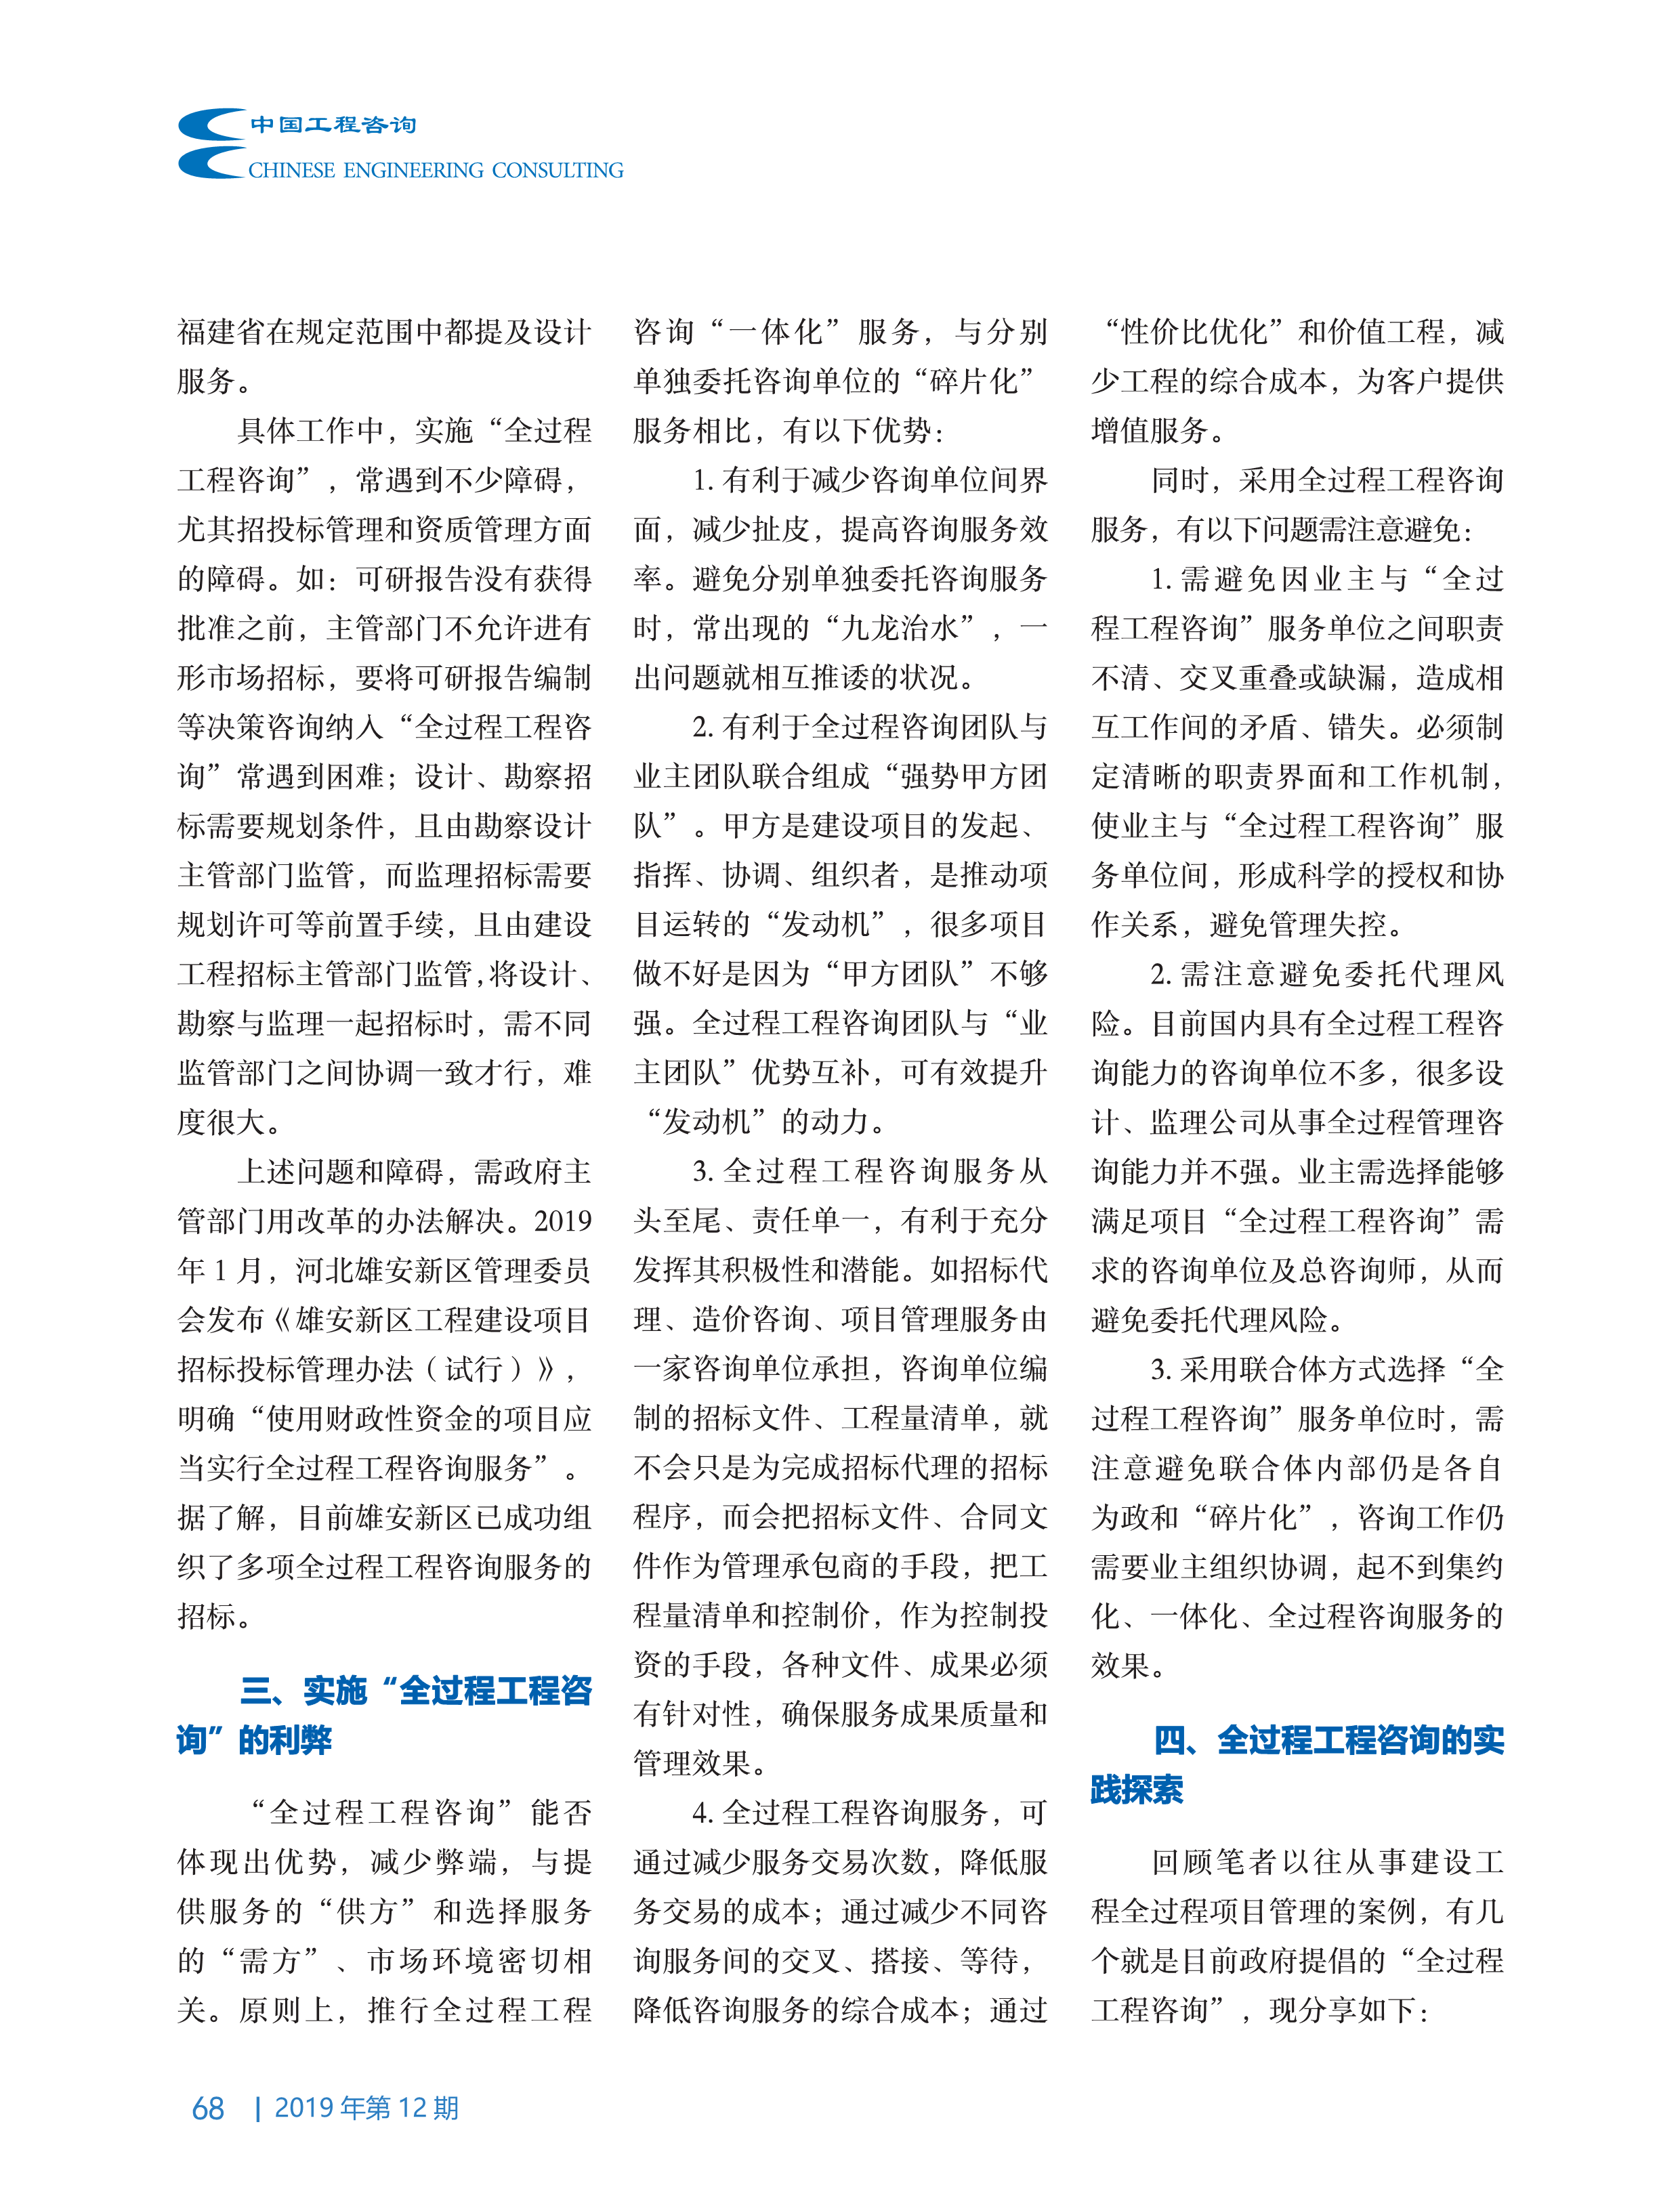 中国工程咨询2019第12期_68